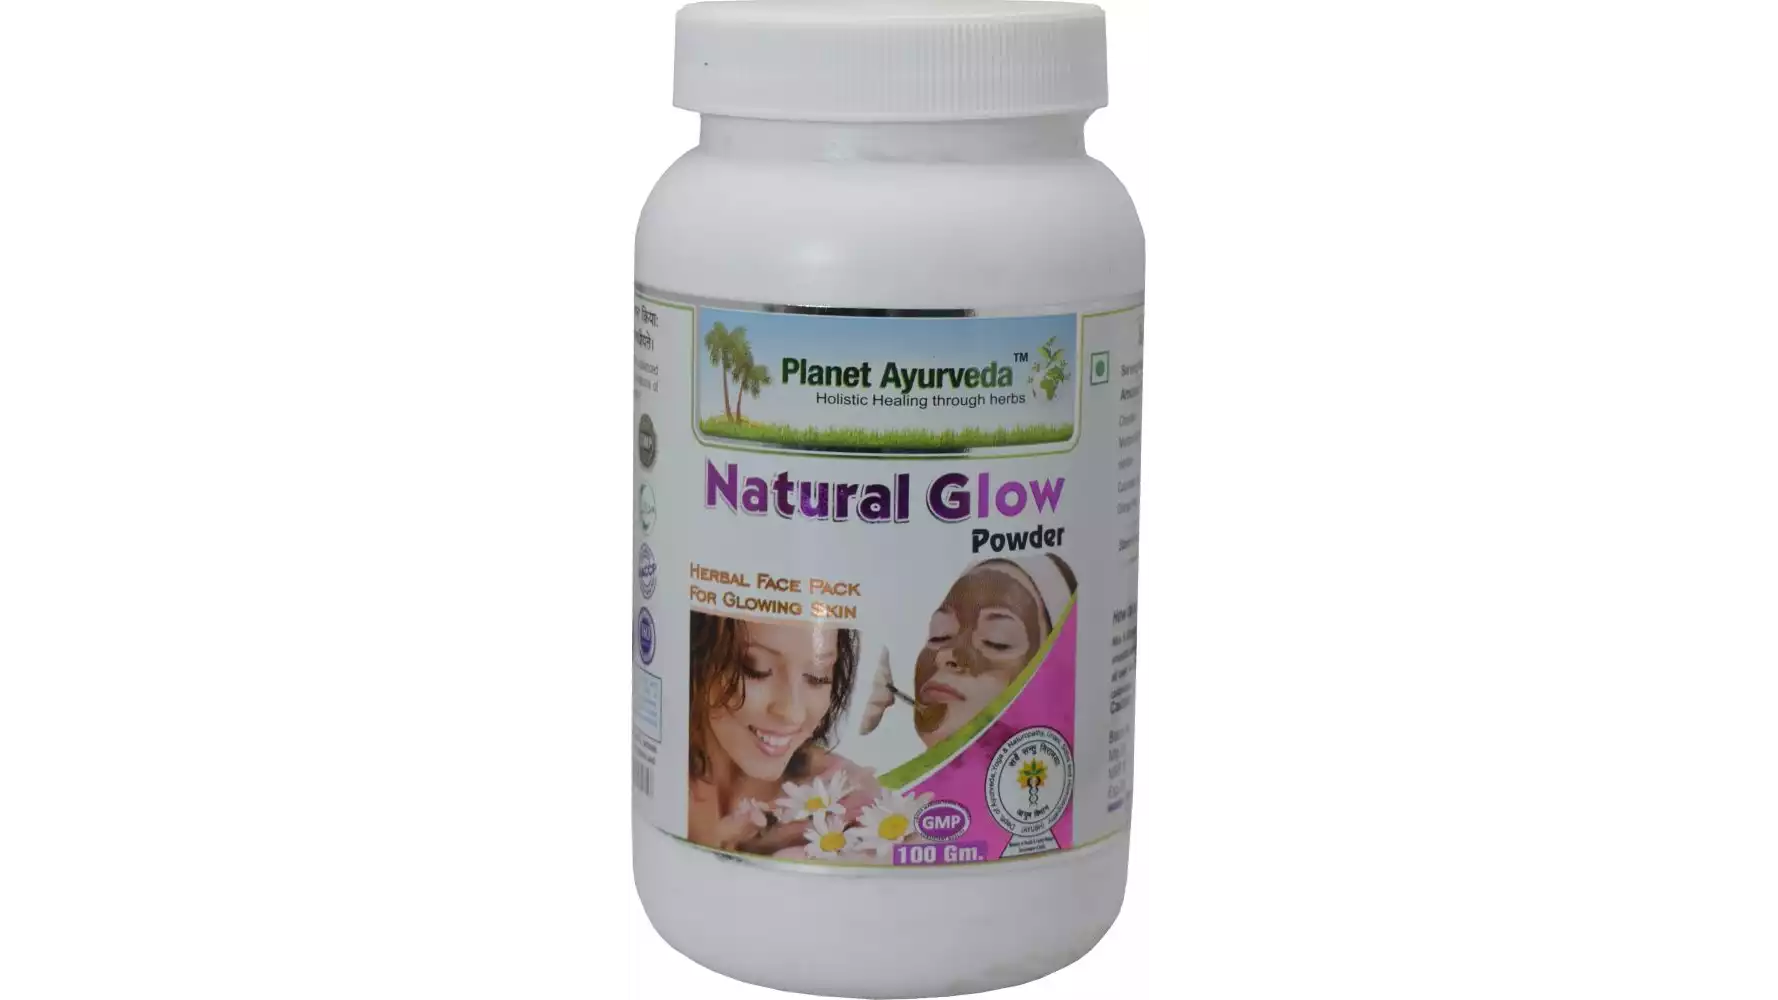 Planet Ayurveda Natural Glow Powder (100g, Pack of 2)